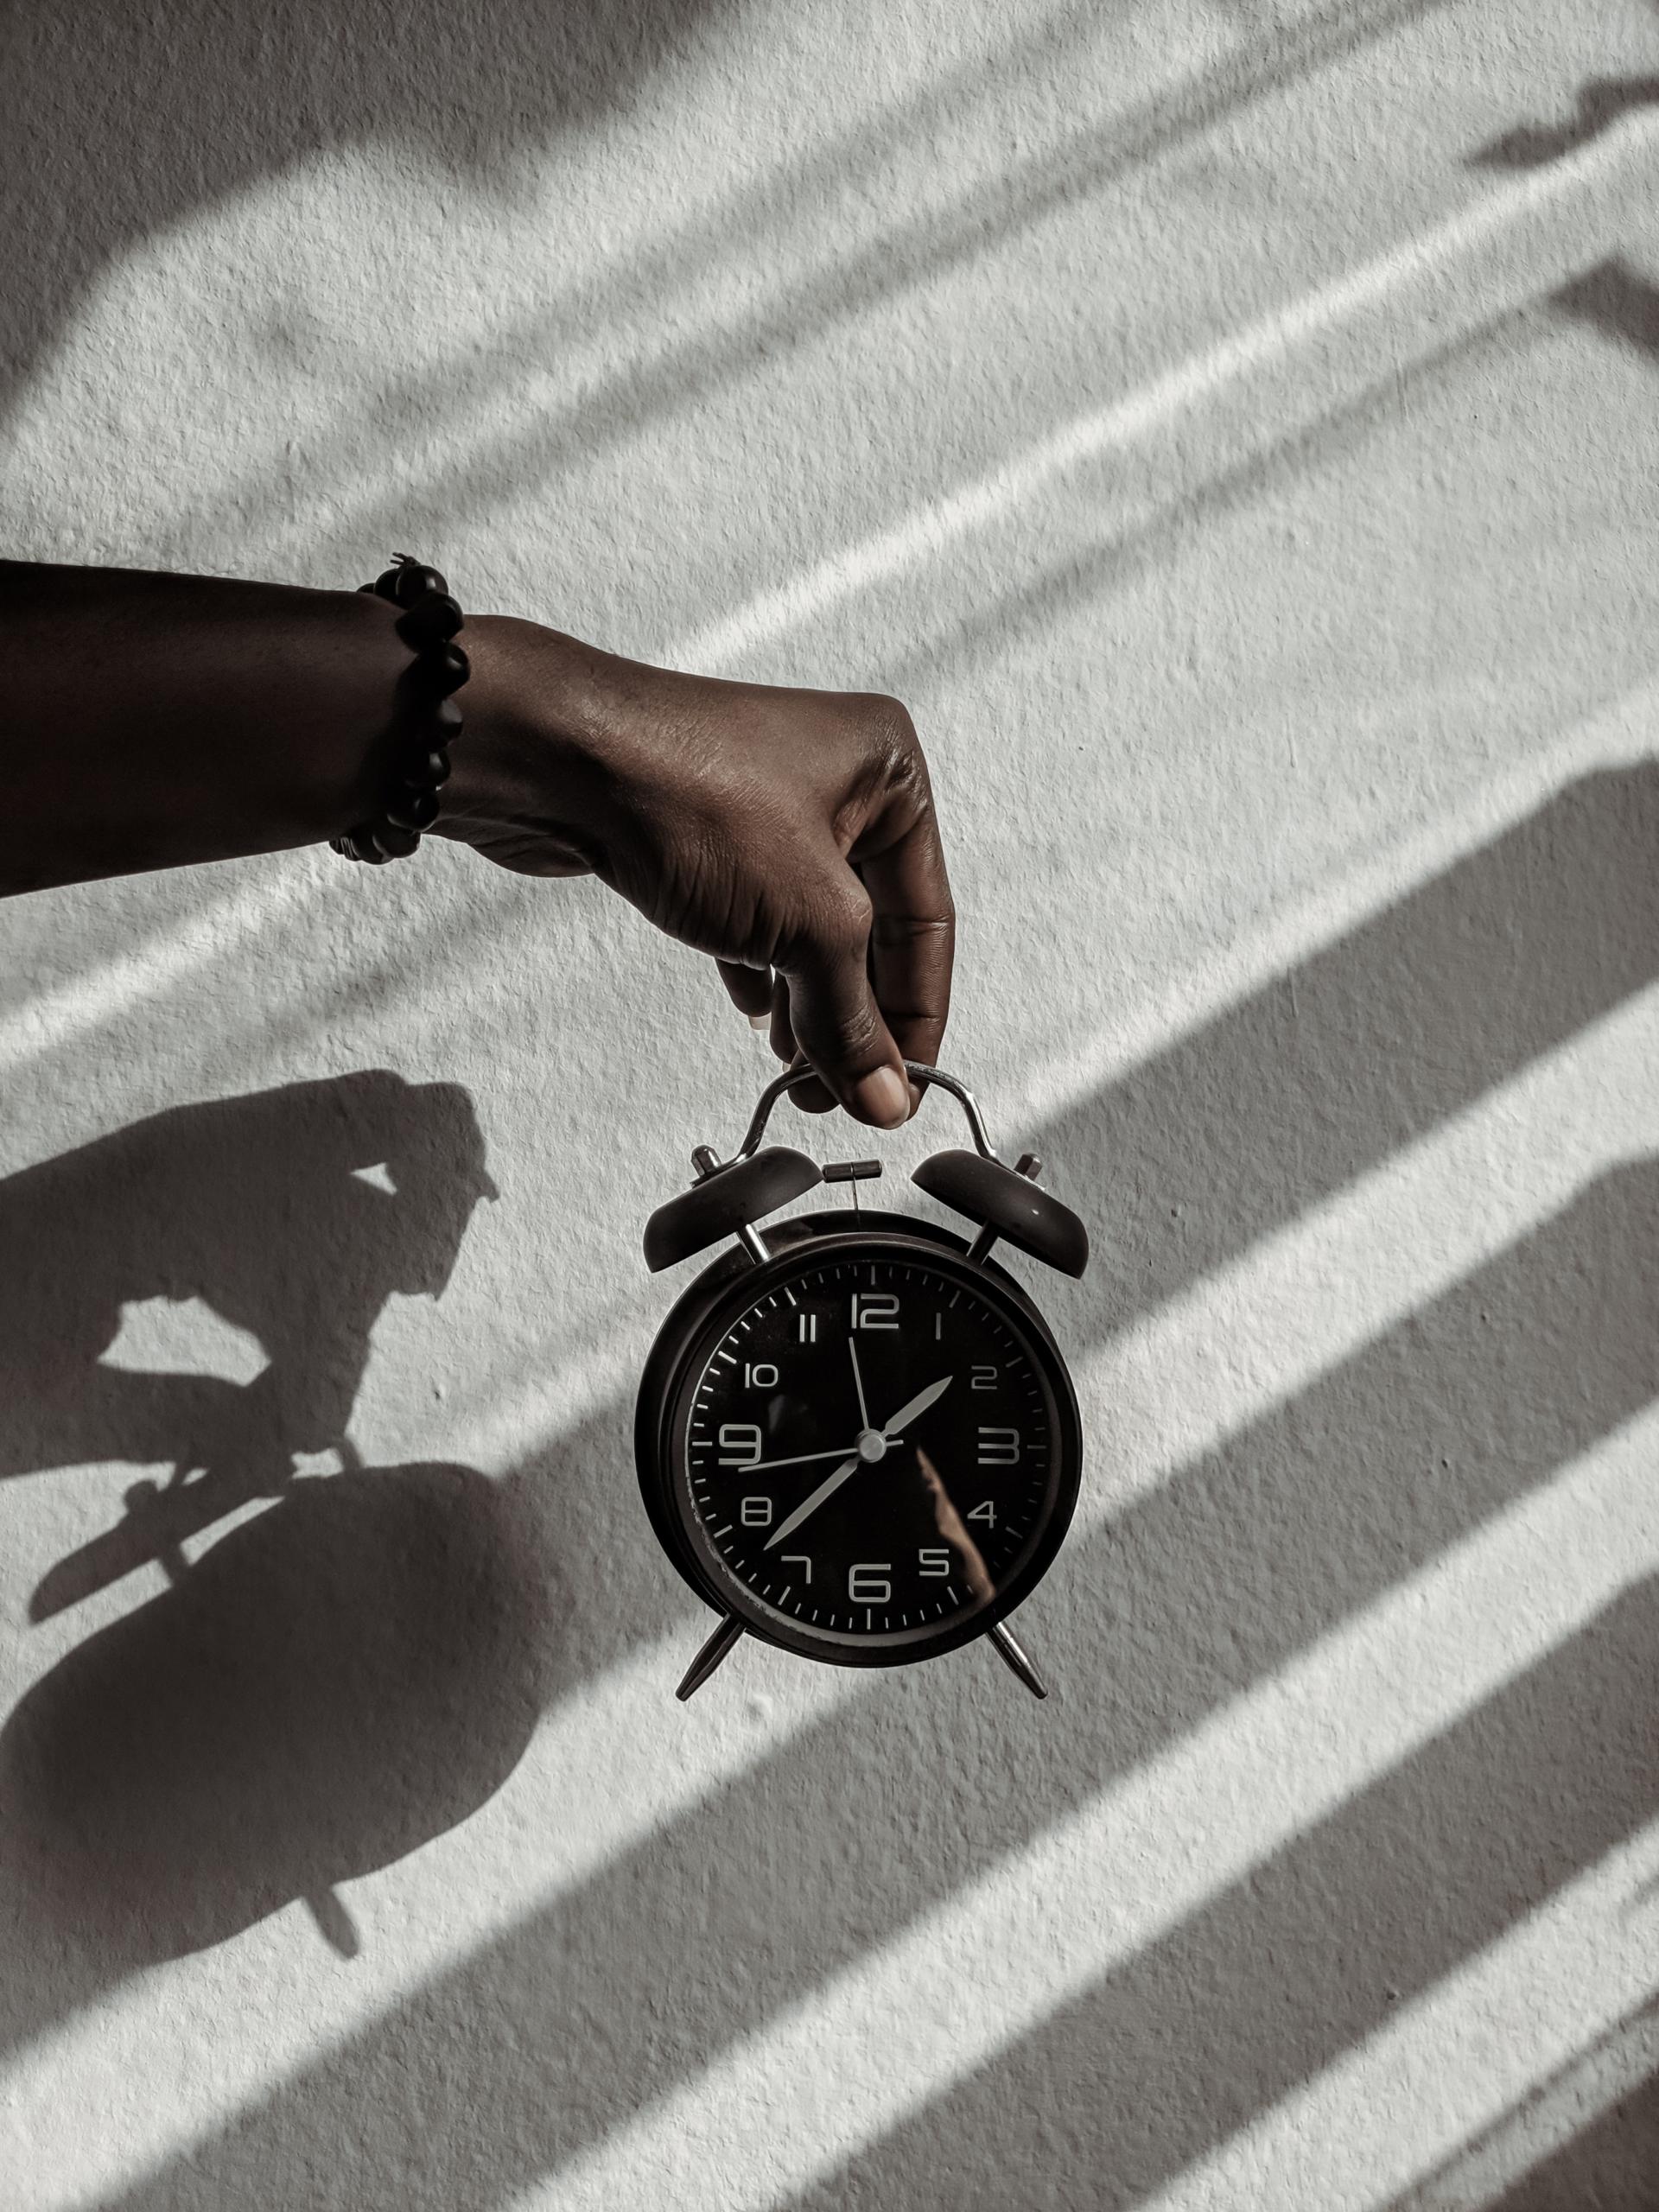 La importancia de la puntualidad